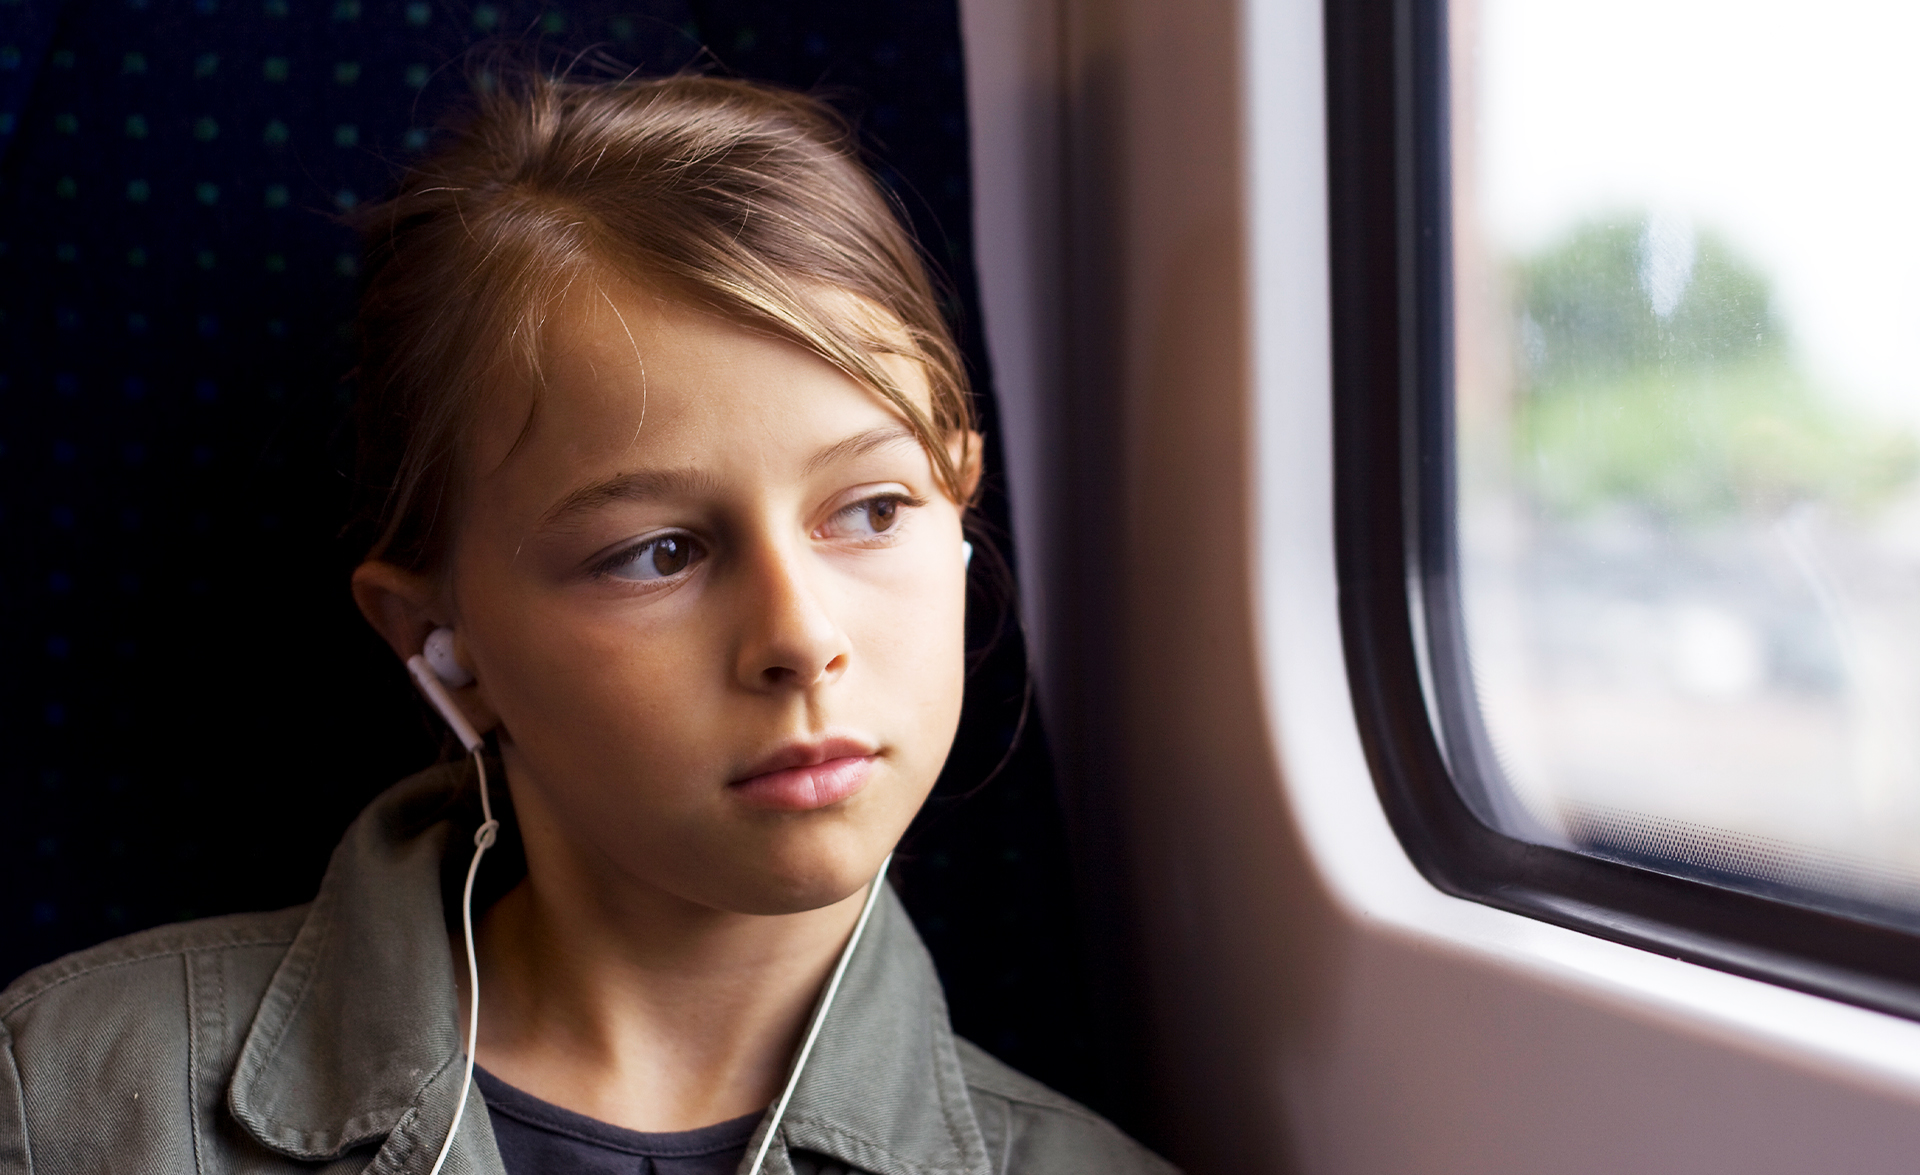 Flicka tittar ut genom ett tågfönster, hon har airpods i öronen och brunt hår och bruna ögon.